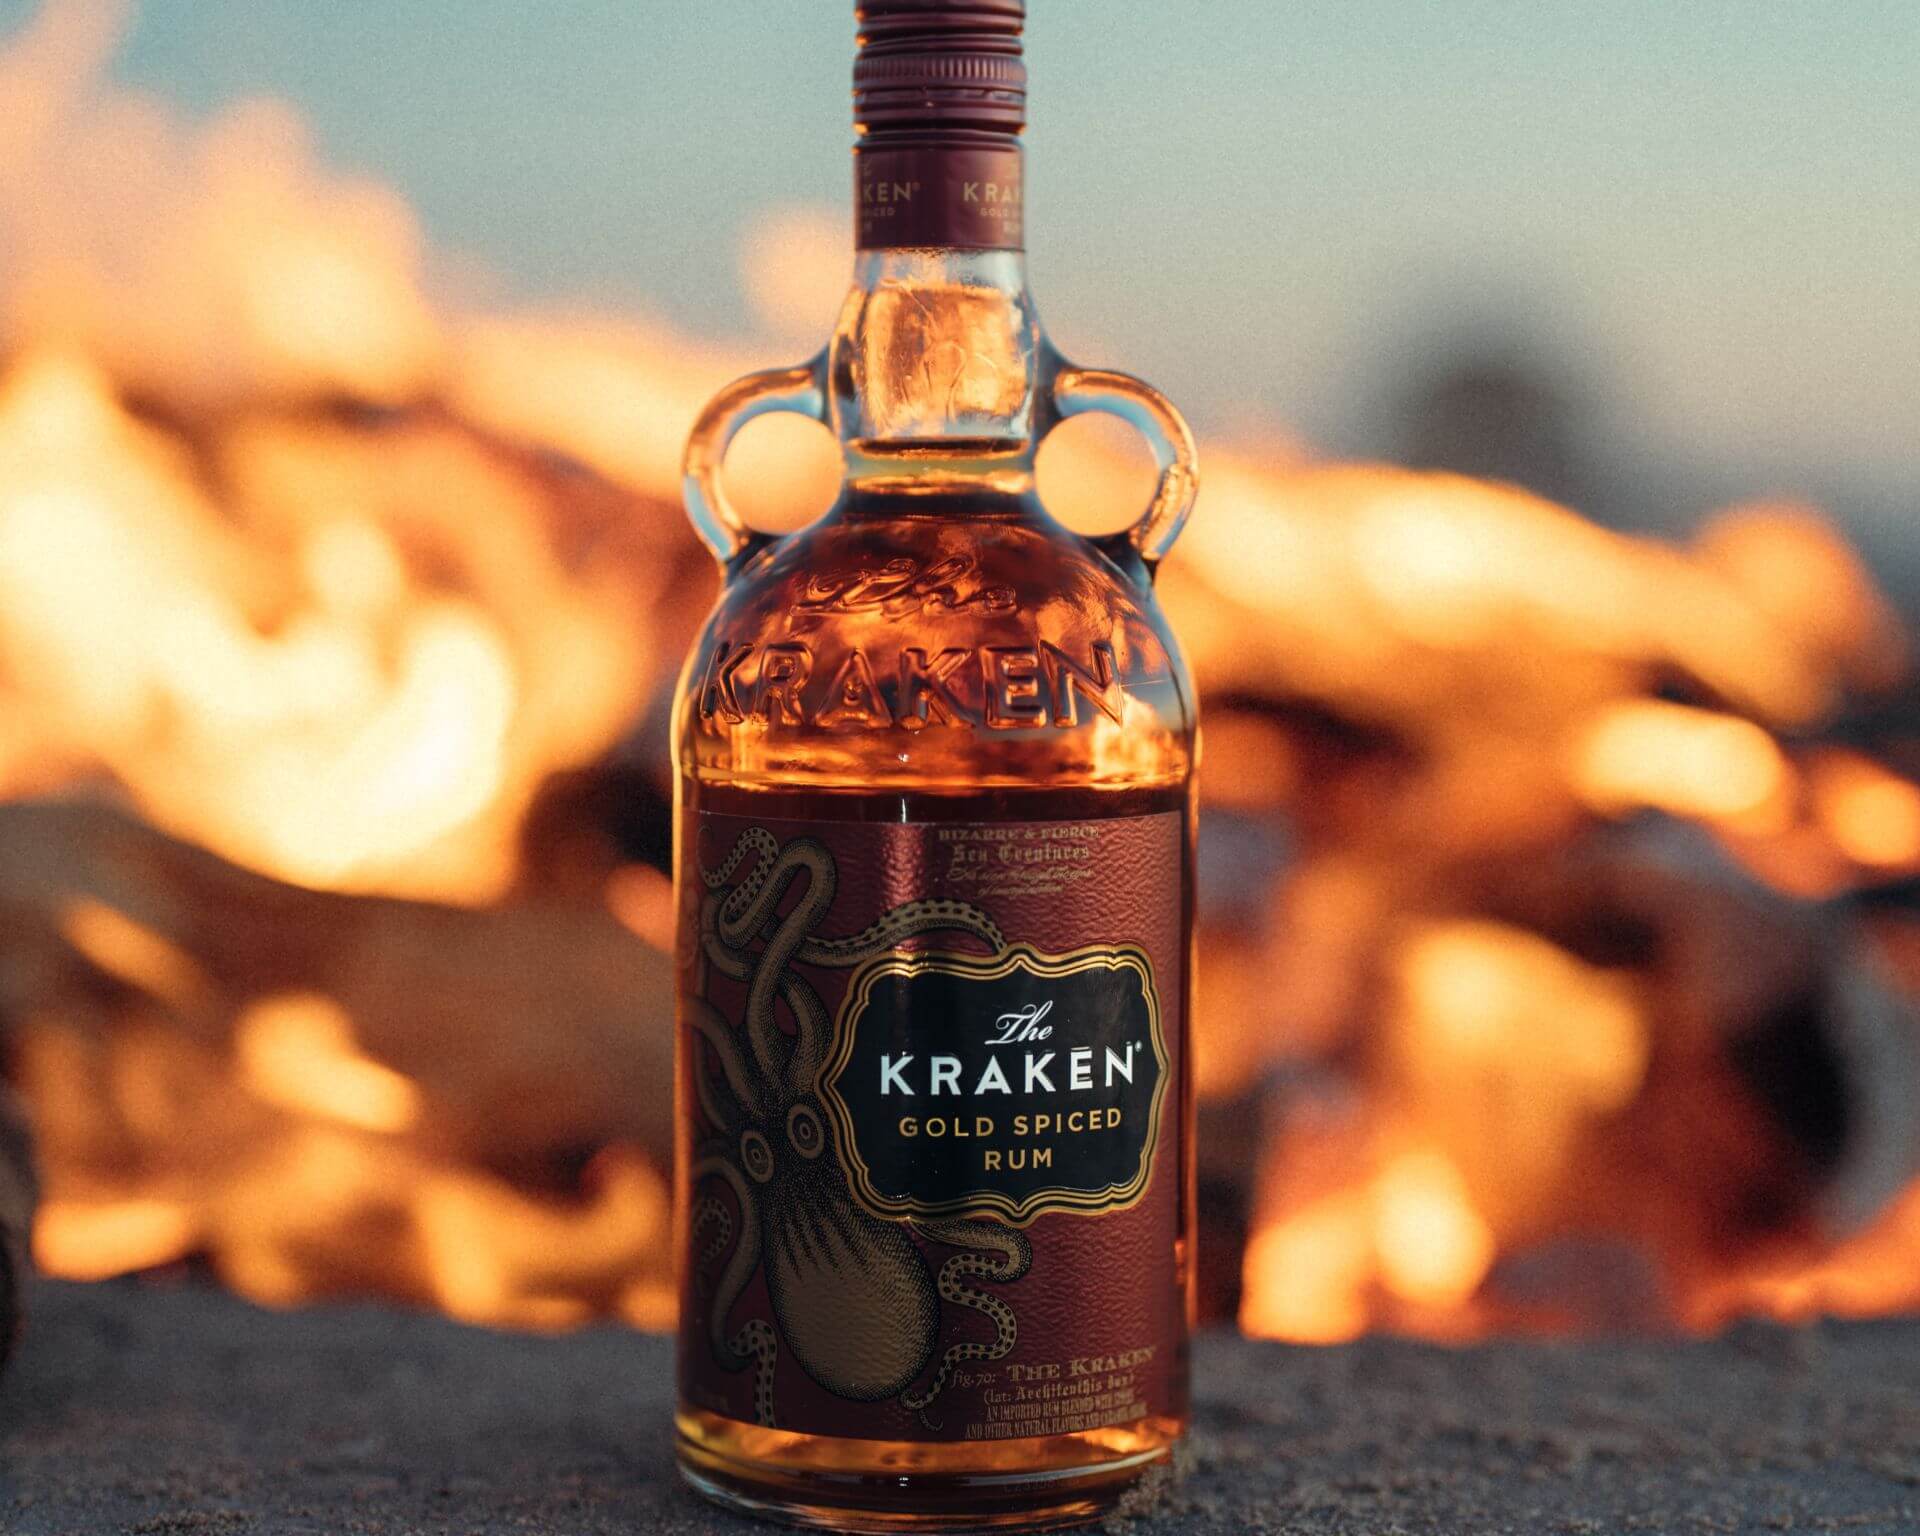 The Kraken Gold Spiced Rum bottle